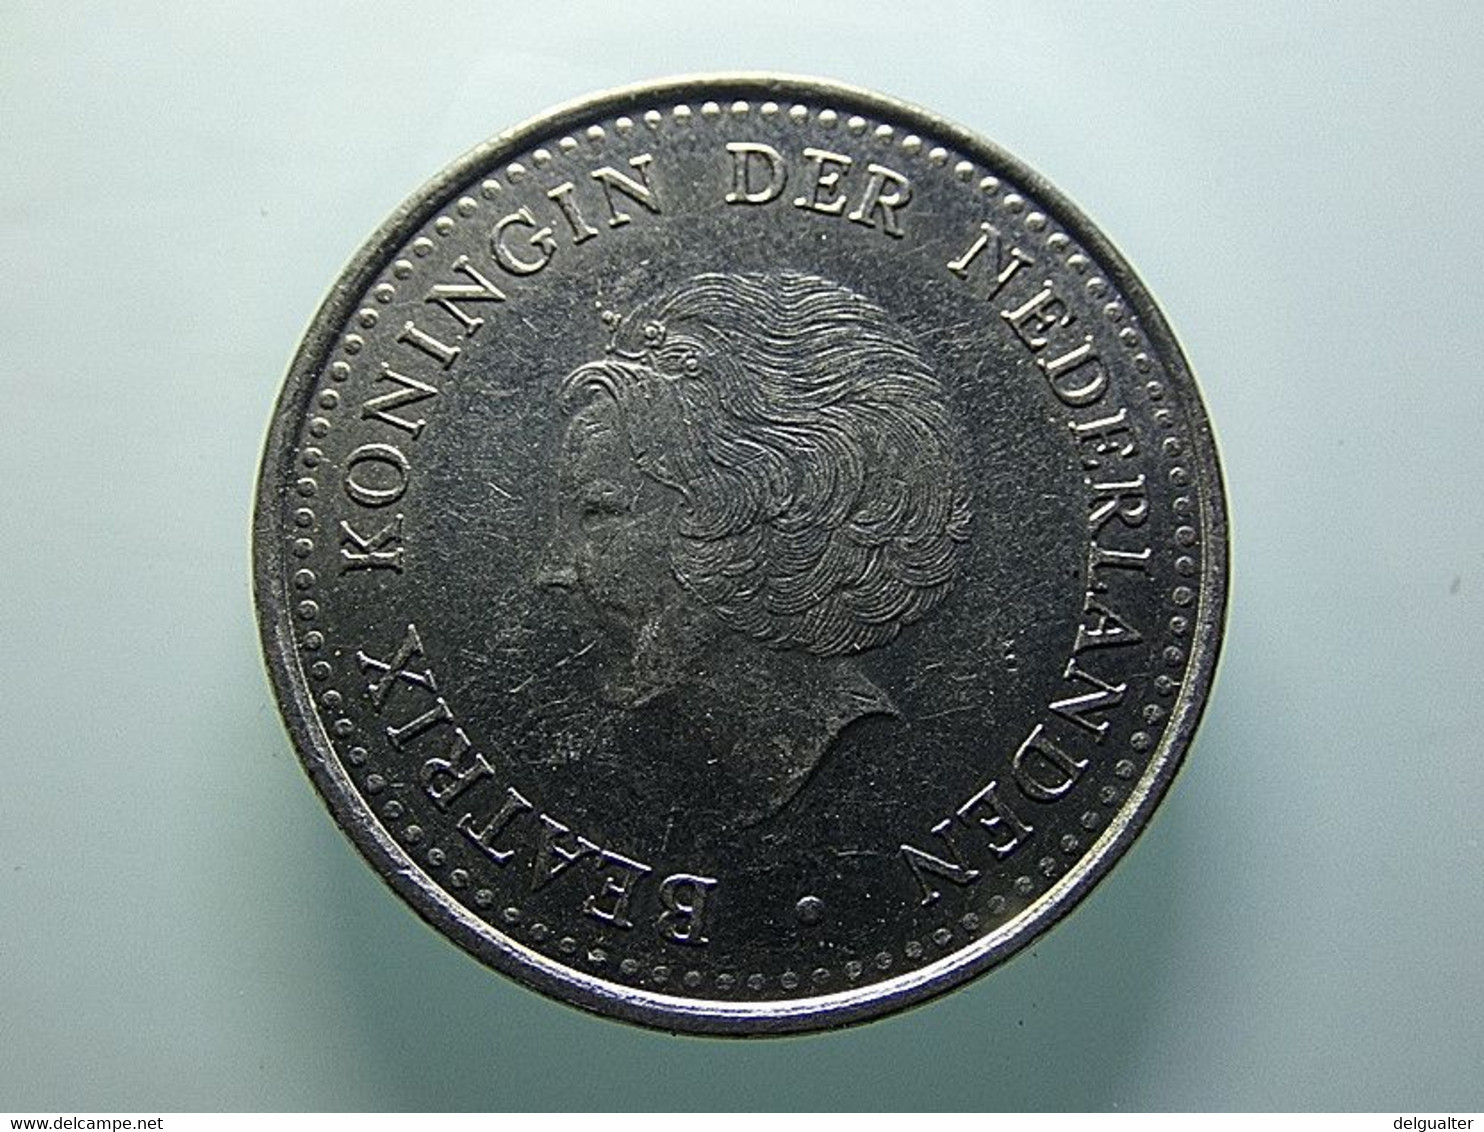 Netherland Antilles 1 Gulden 1985 - Netherlands Antilles